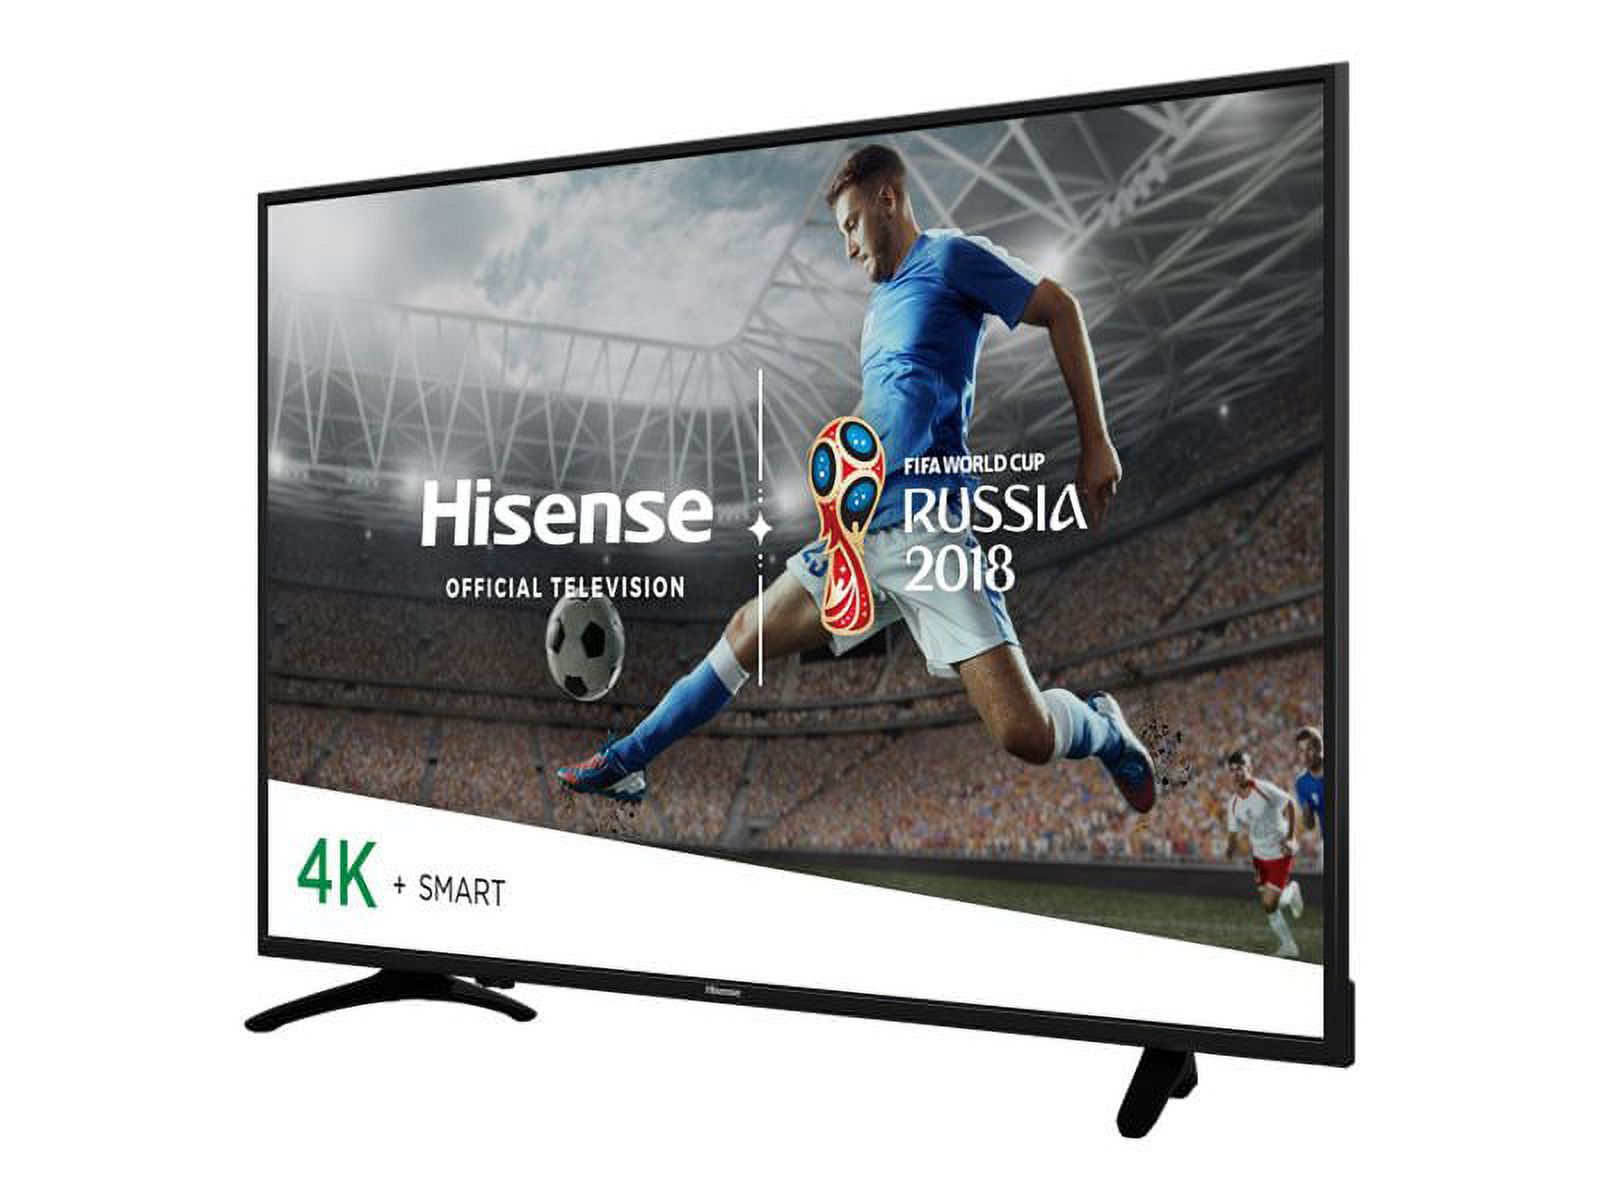 Hisense 65H8E - 65" Diagonal Class (64.5" viewable) - H8 Series LED-backlit LCD TV - Smart TV - 4K UHD (2160p) 3840 x 2160 - HDR - direct-lit LED - image 1 of 8